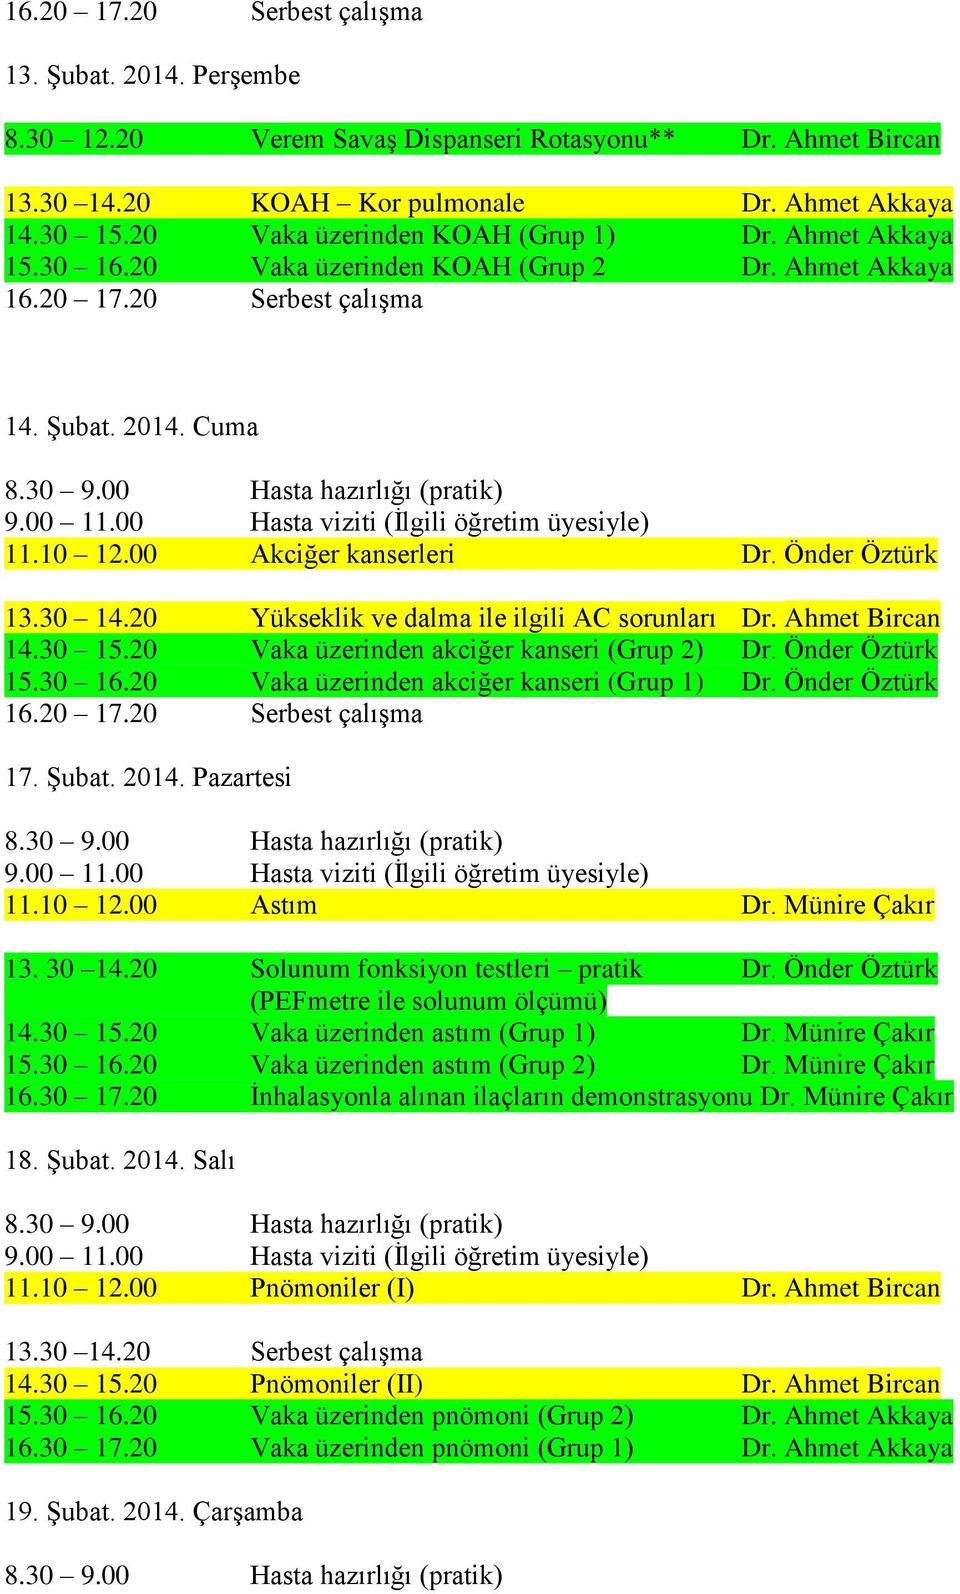 30 15.20 Vaka üzerinden akciğer kanseri (Grup 2) Dr. Önder Öztürk 15.30 16.20 Vaka üzerinden akciğer kanseri (Grup 1) Dr. Önder Öztürk 17. Şubat. 2014. Pazartesi 11.10 12.00 Astım Dr. Münire Çakır 13.